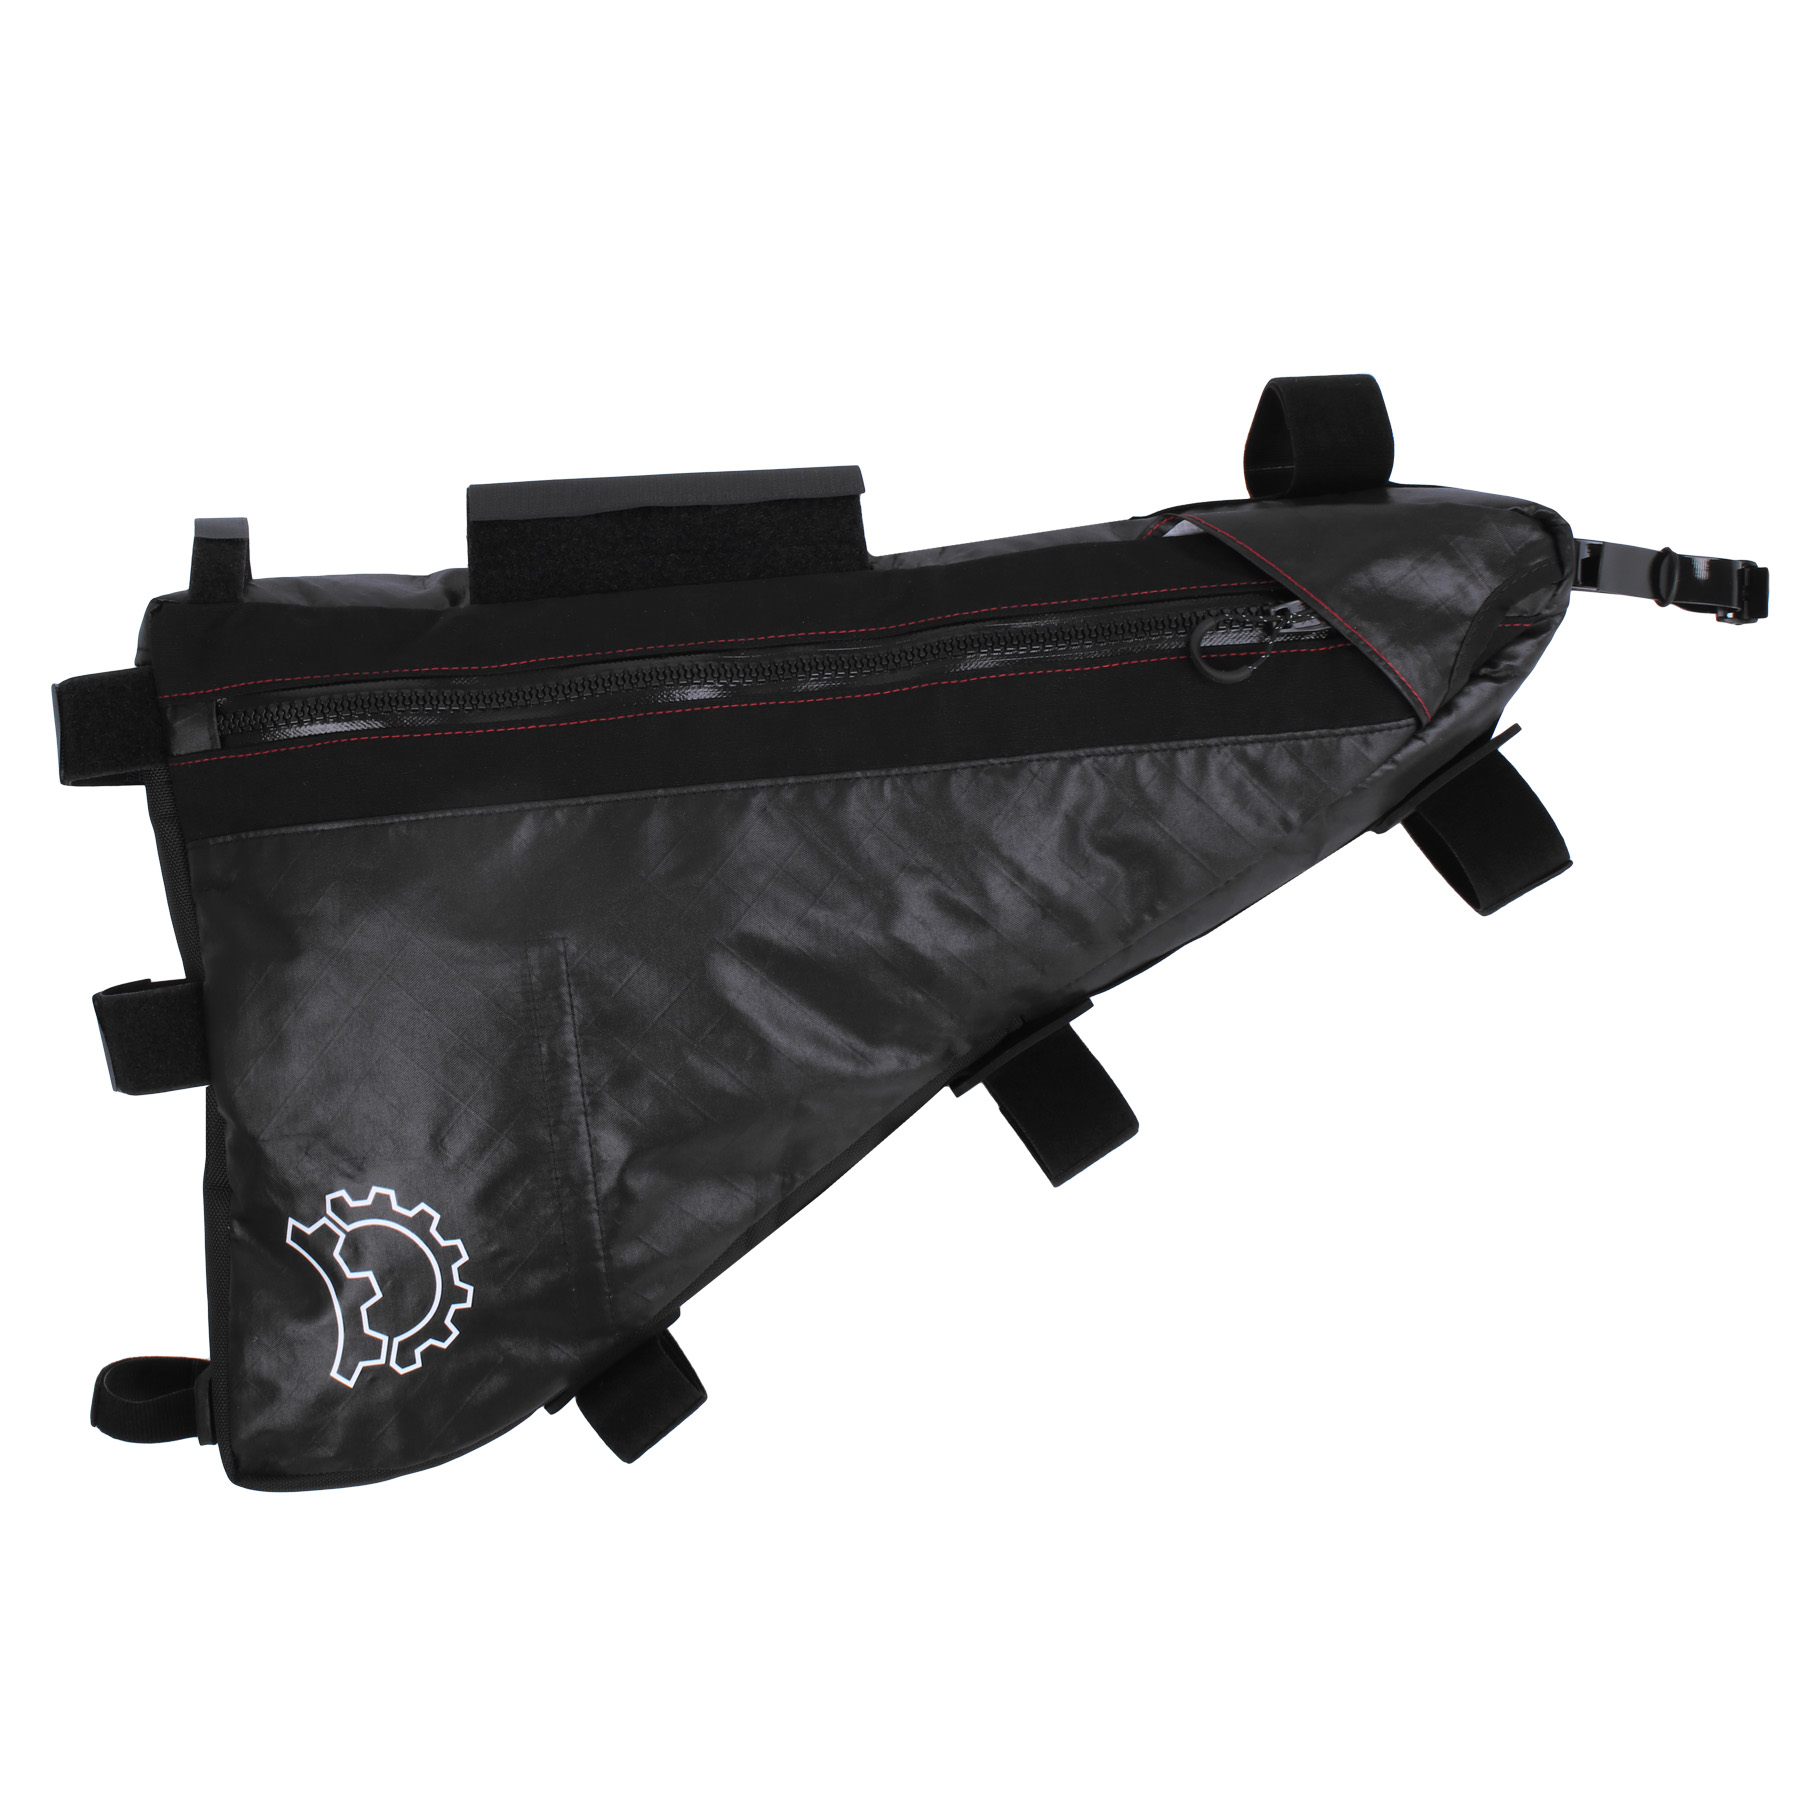 Produktbild von Revelate Designs Ranger EcoPac Rahmentasche - 10L - schwarz - XL